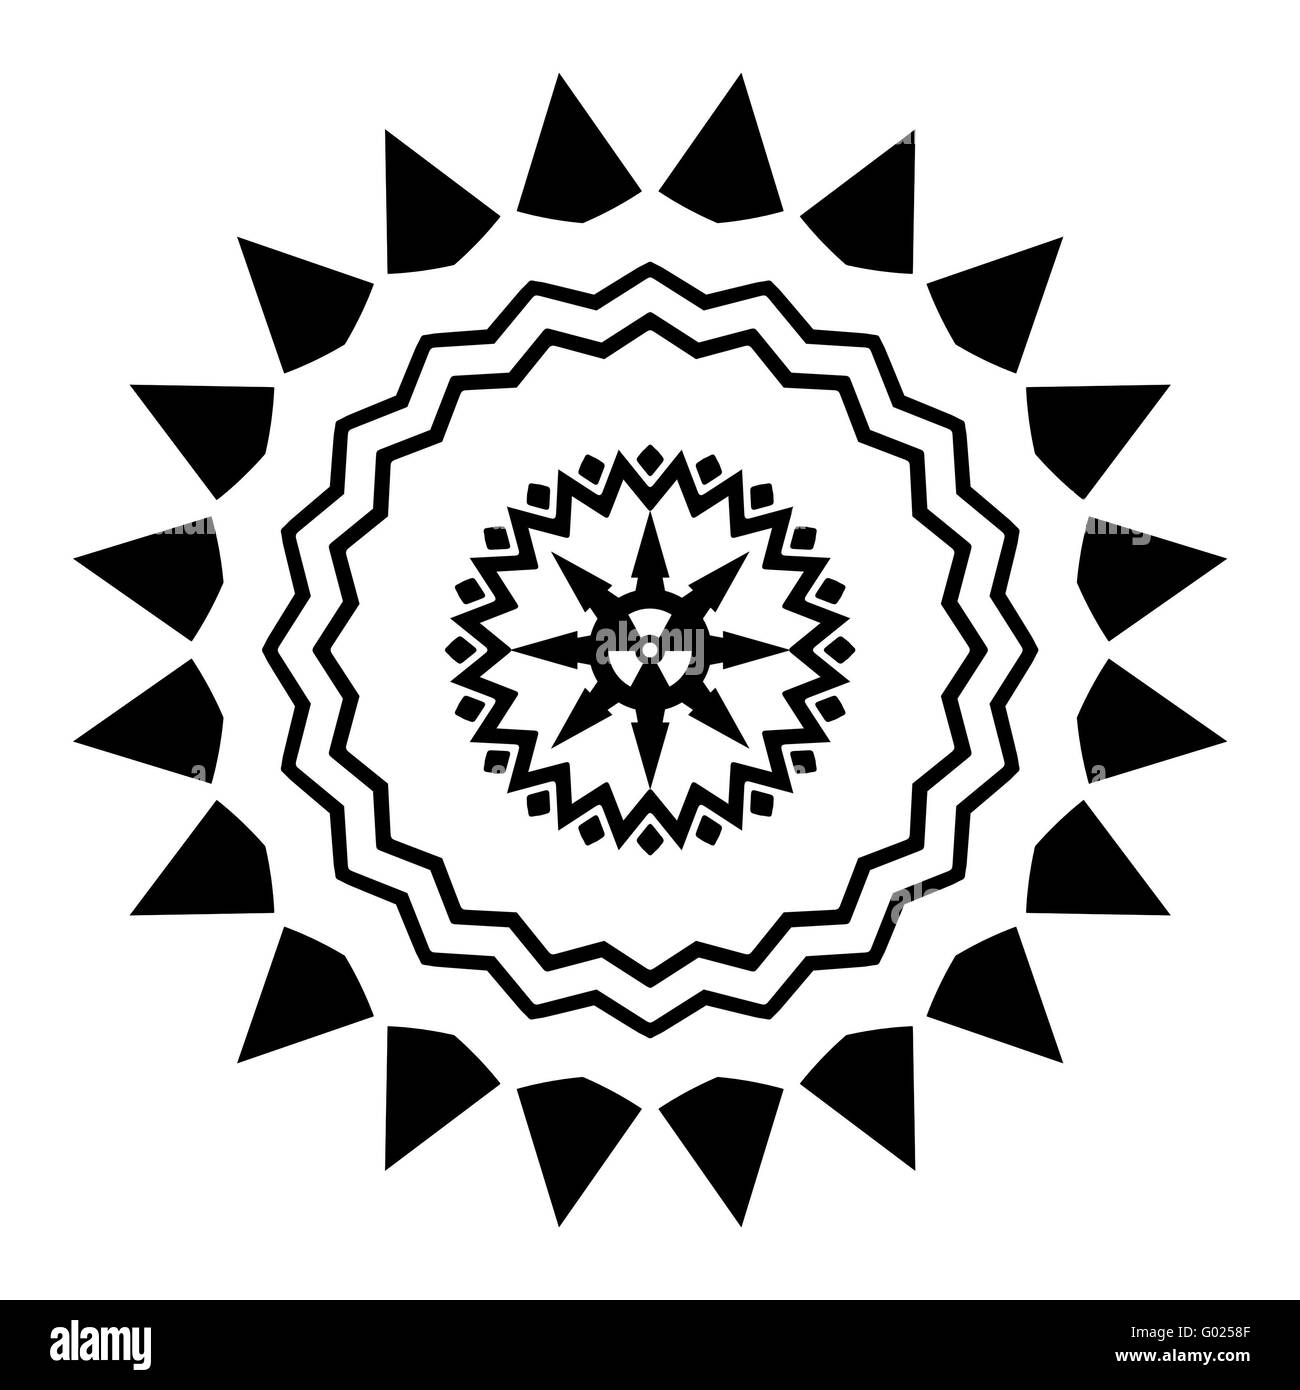 Symbole atomique au Banque d'images noir et blanc - Alamy